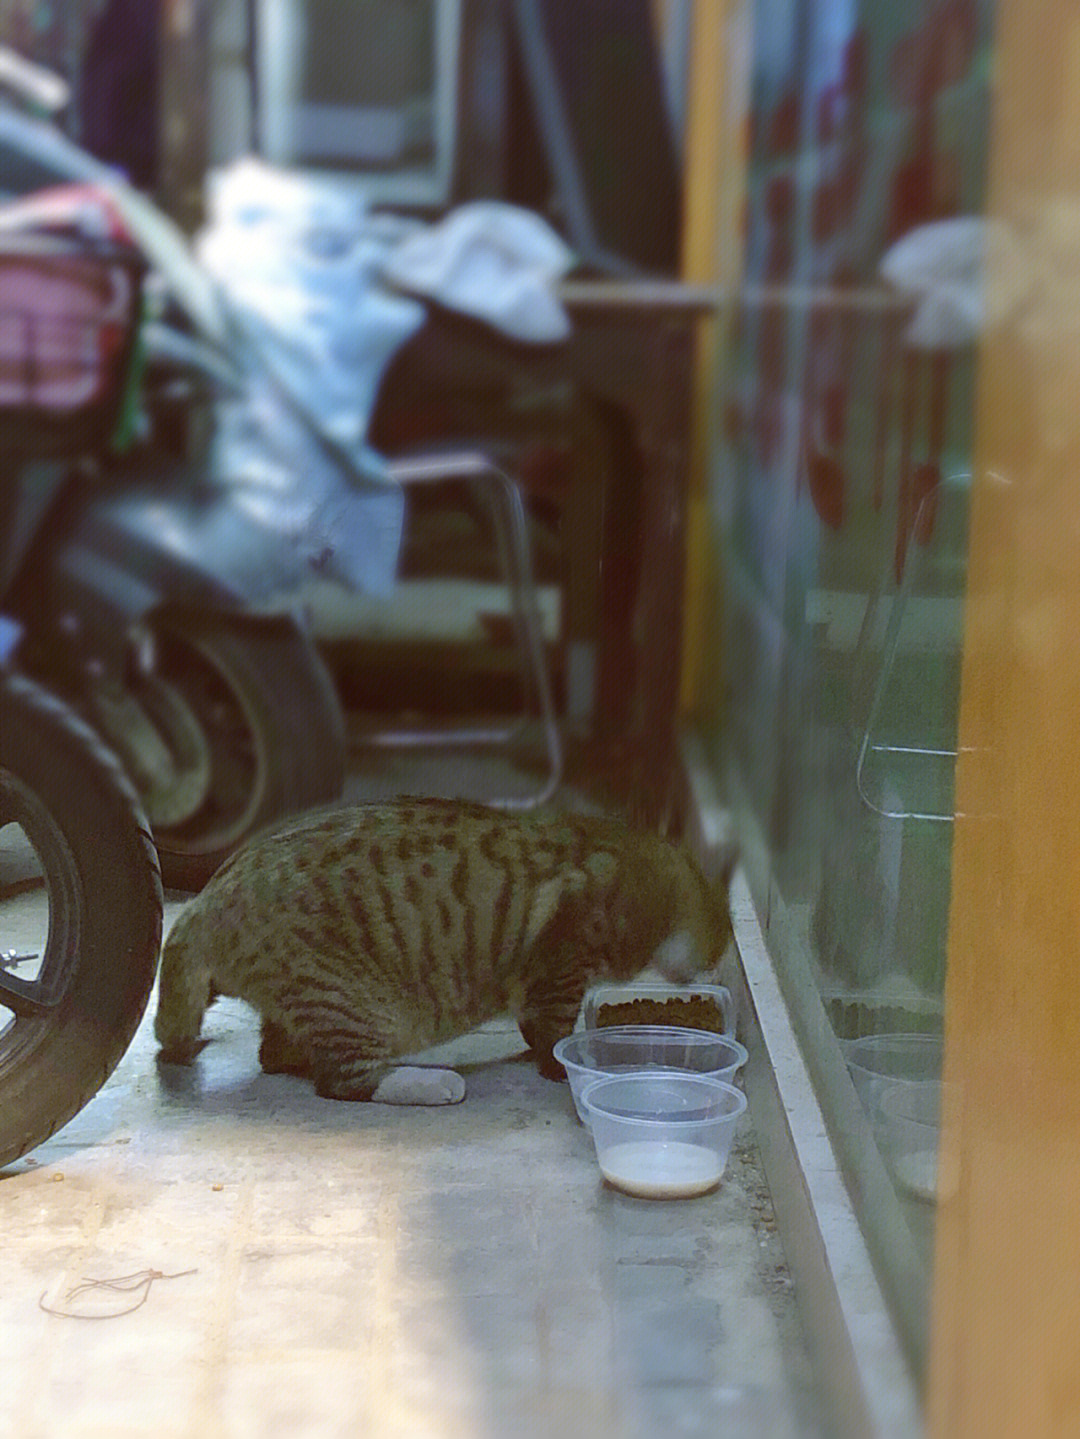 倒垃圾的时候看见流浪猫在翻垃圾桶,00心里一酸